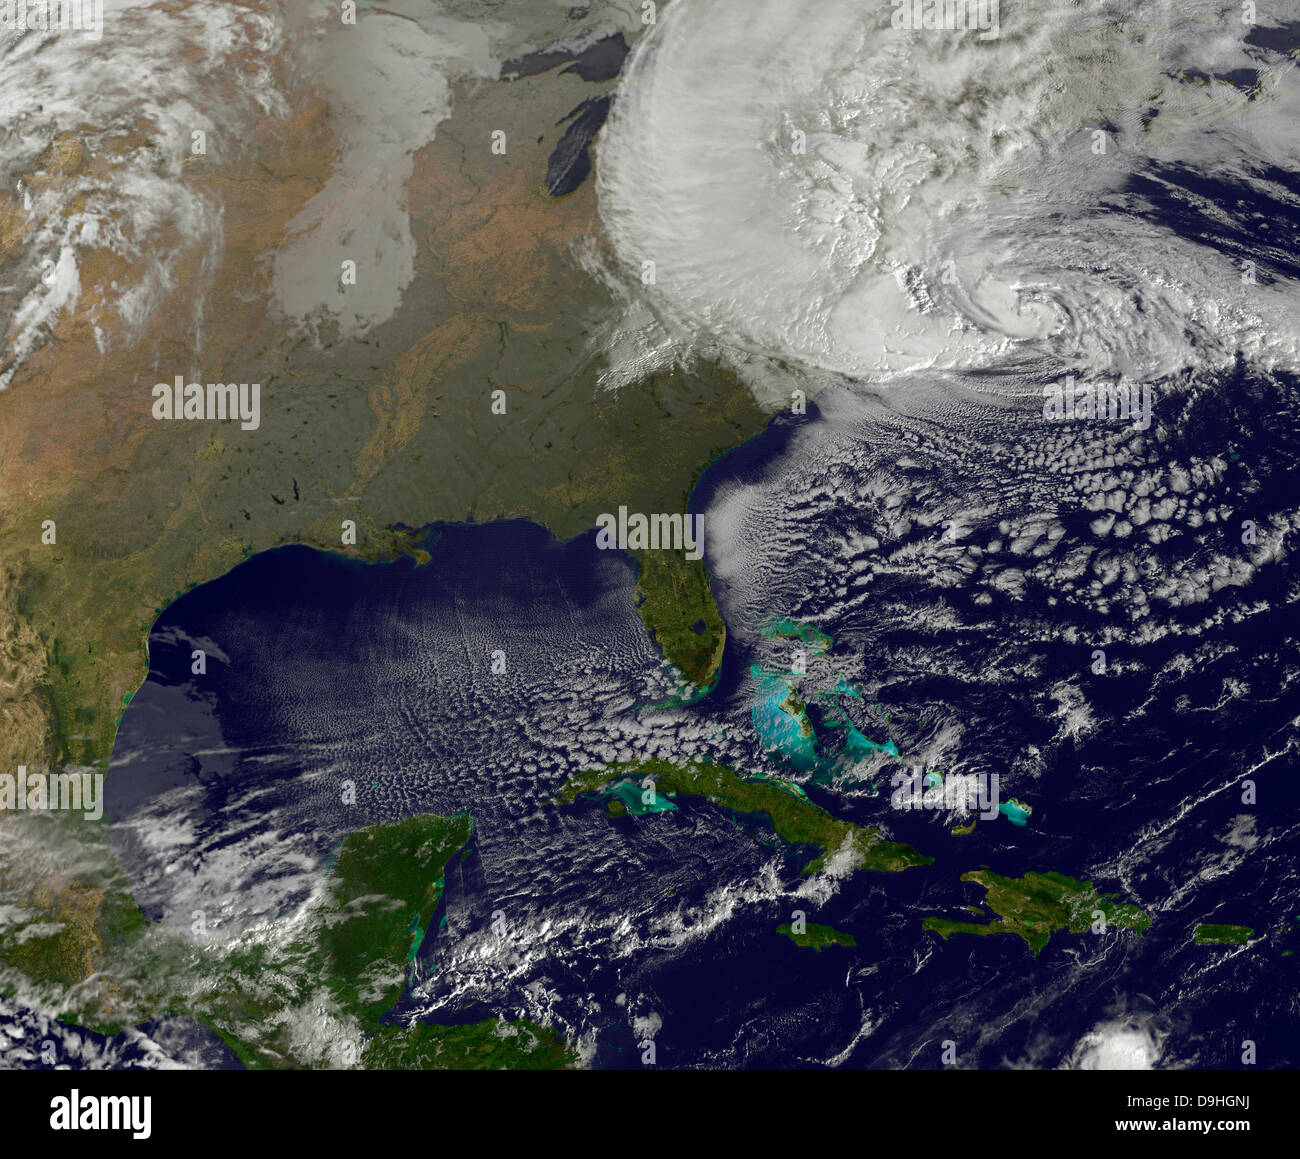 Ottobre 29, 2012 - uragano Sandy percosse la costa est degli Stati Uniti. Foto Stock